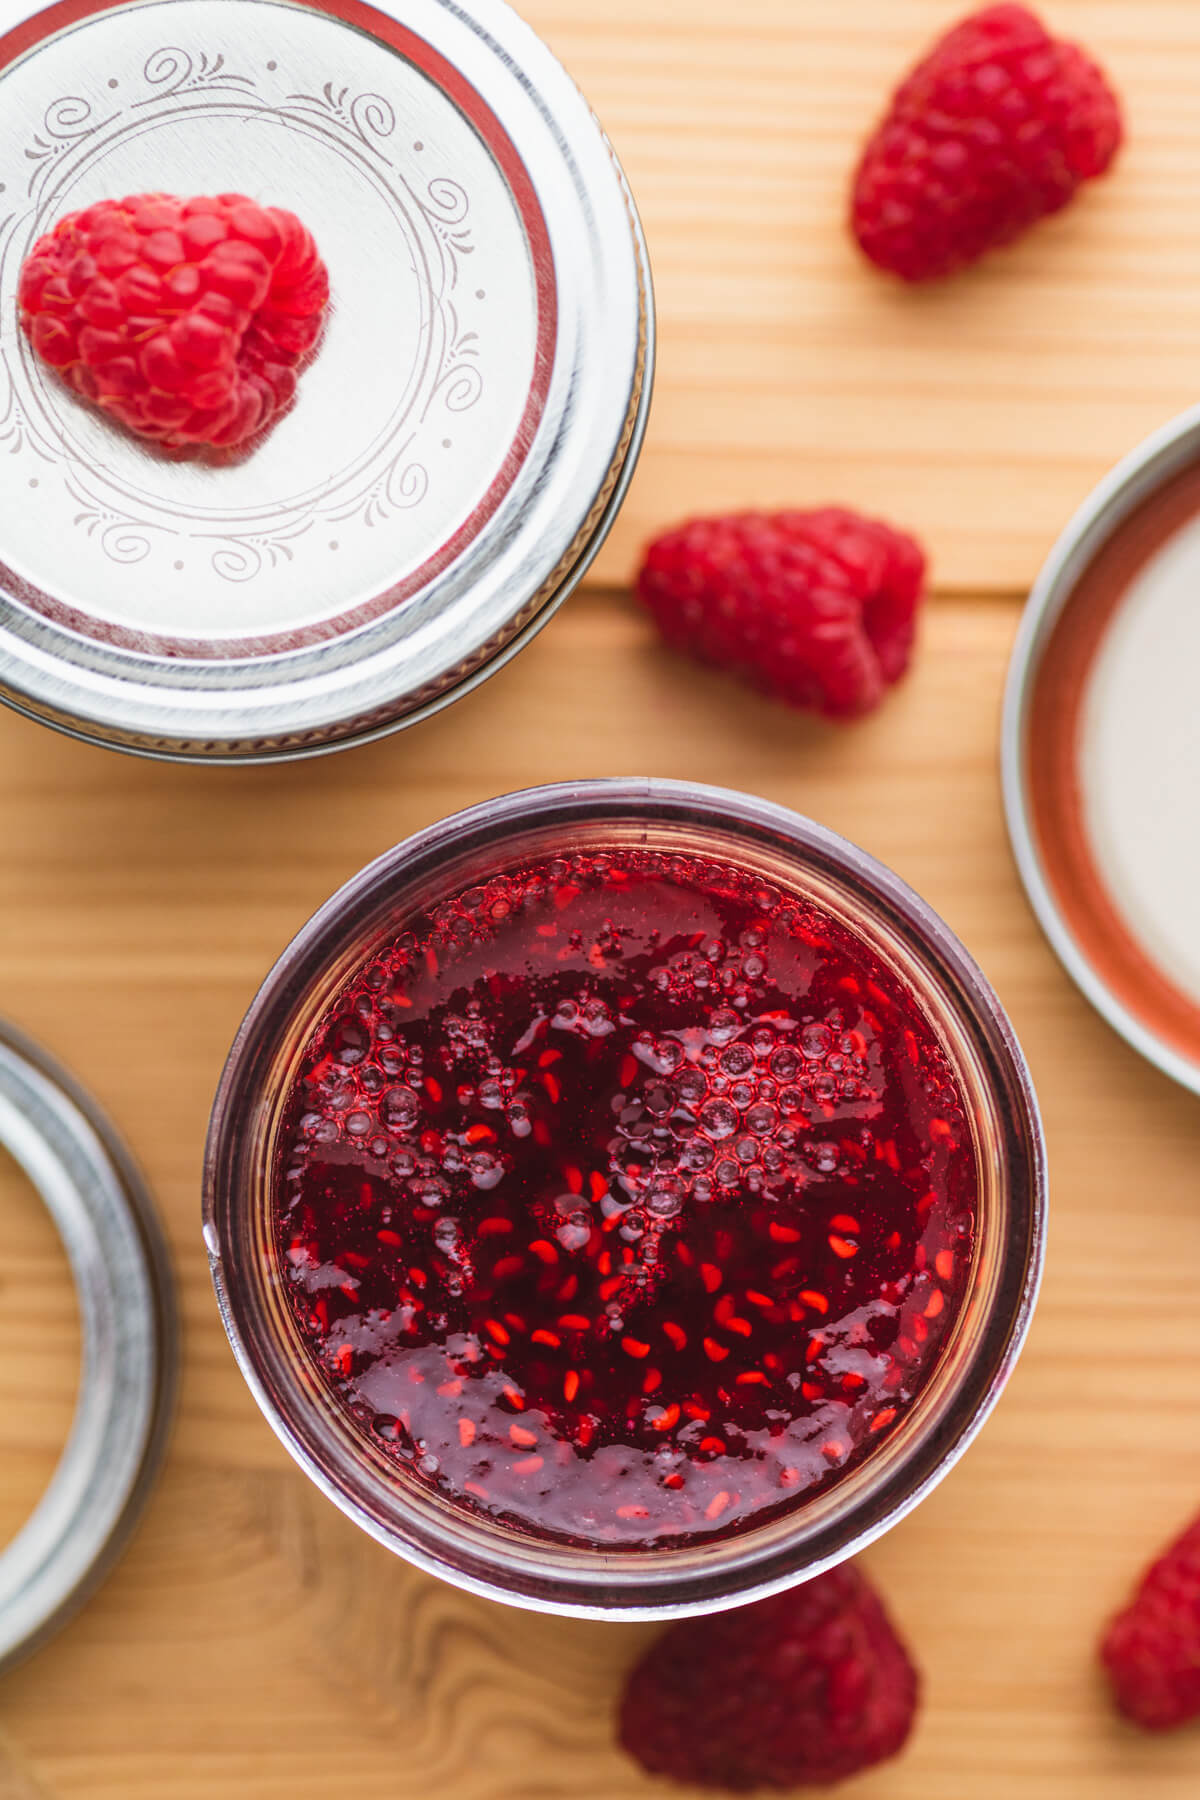 An overhead photo of an open jar of raspberry jam.